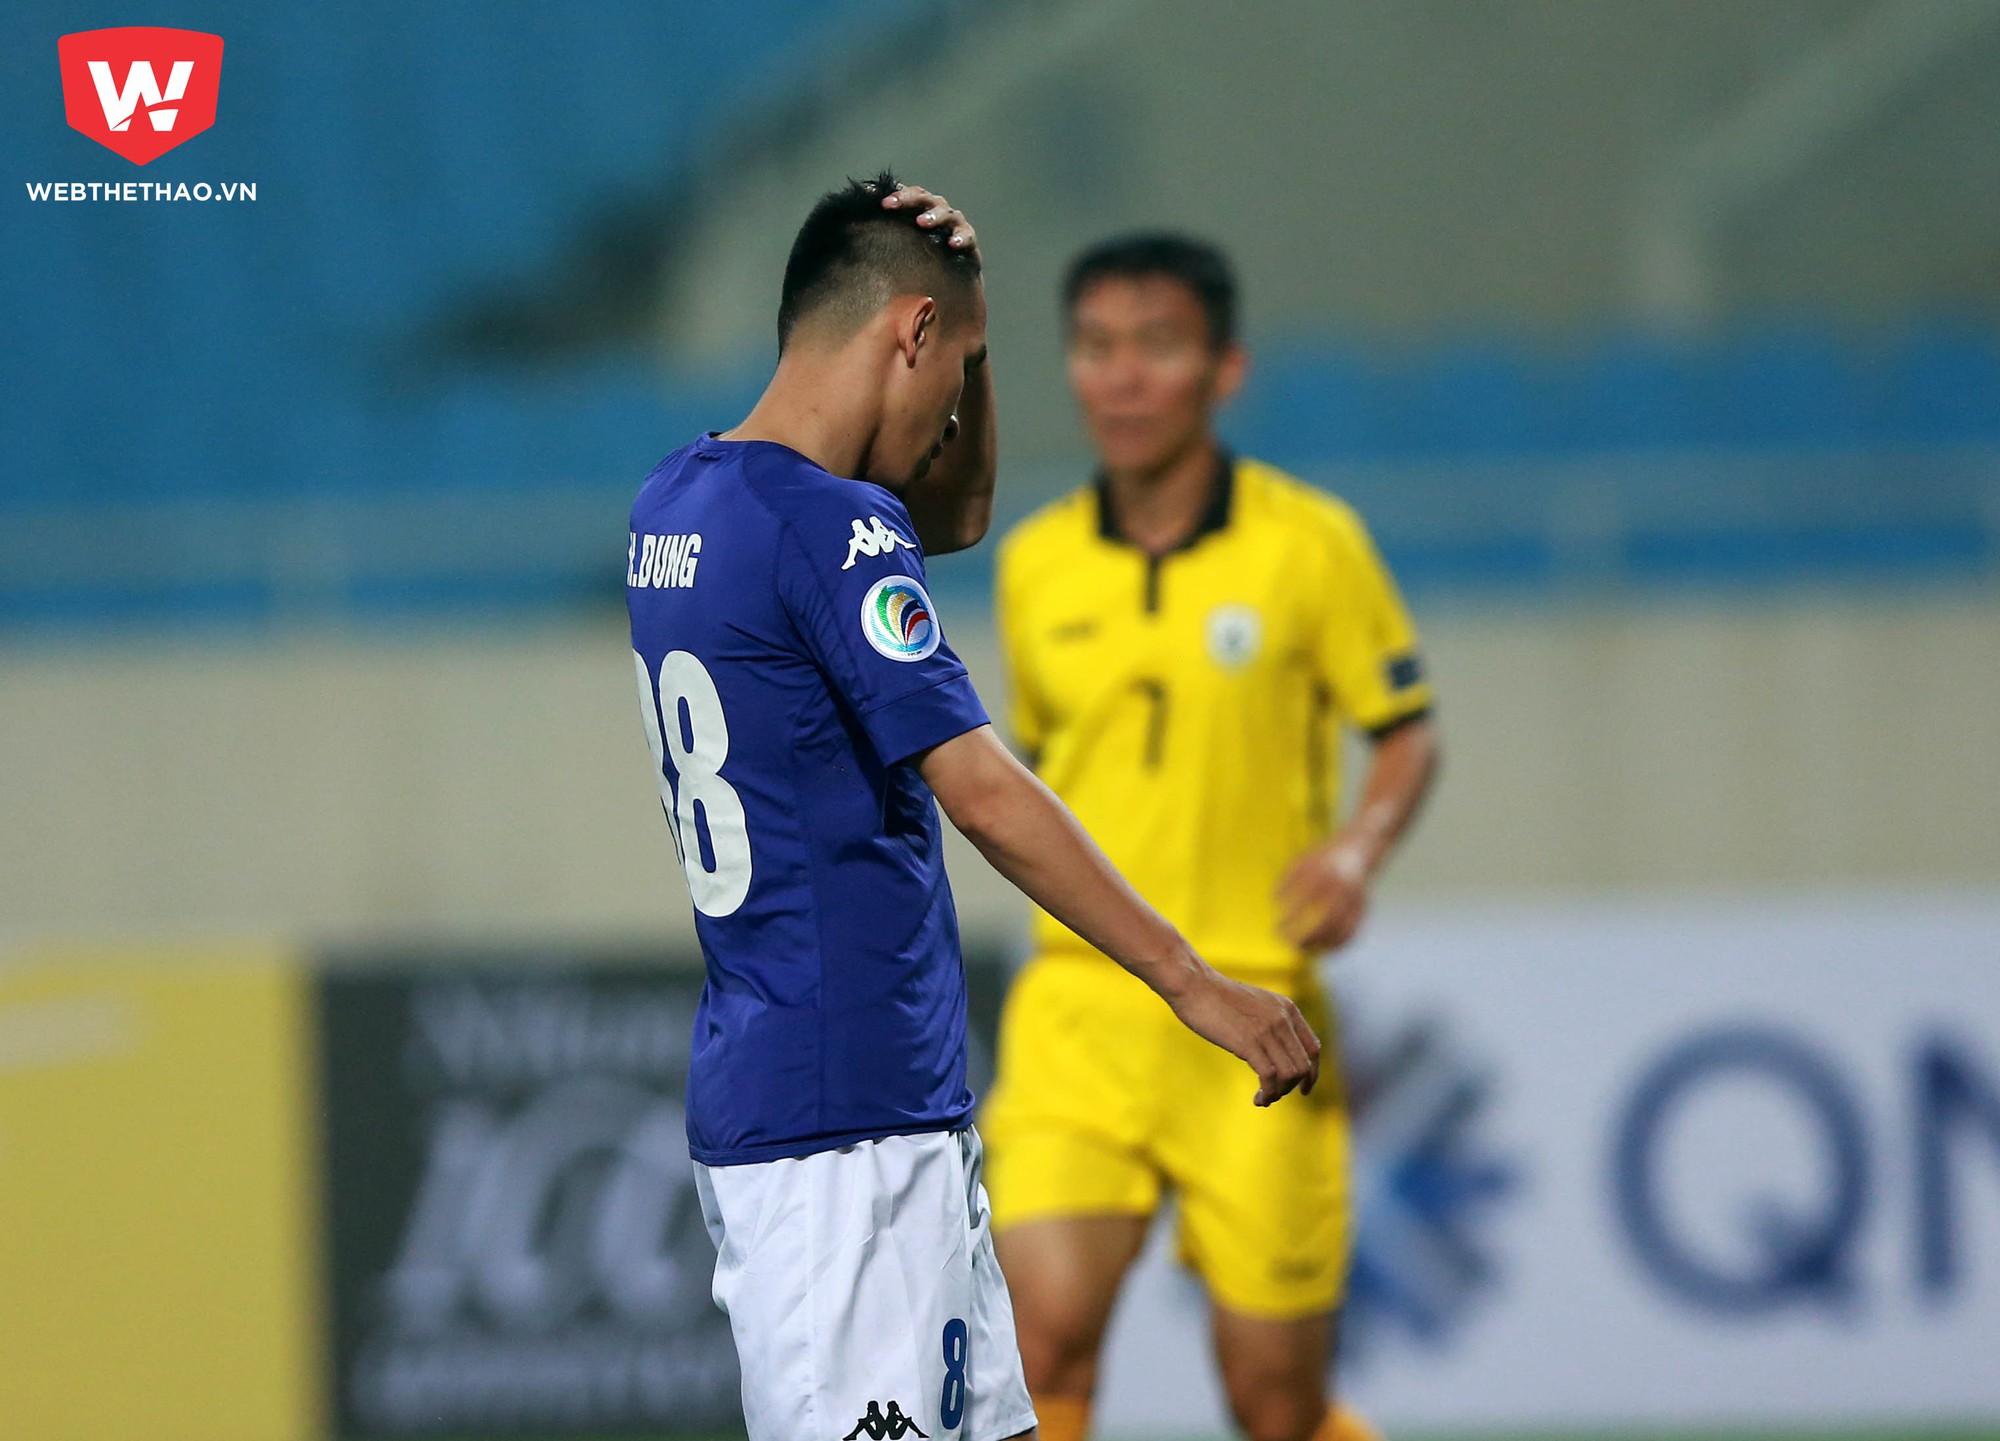 Các cầu thủ vẫn chưa khiến HLV Chu Đình Nghiêm hài lòng dù thắng tới 4-0. Ảnh: Hải Đăng.